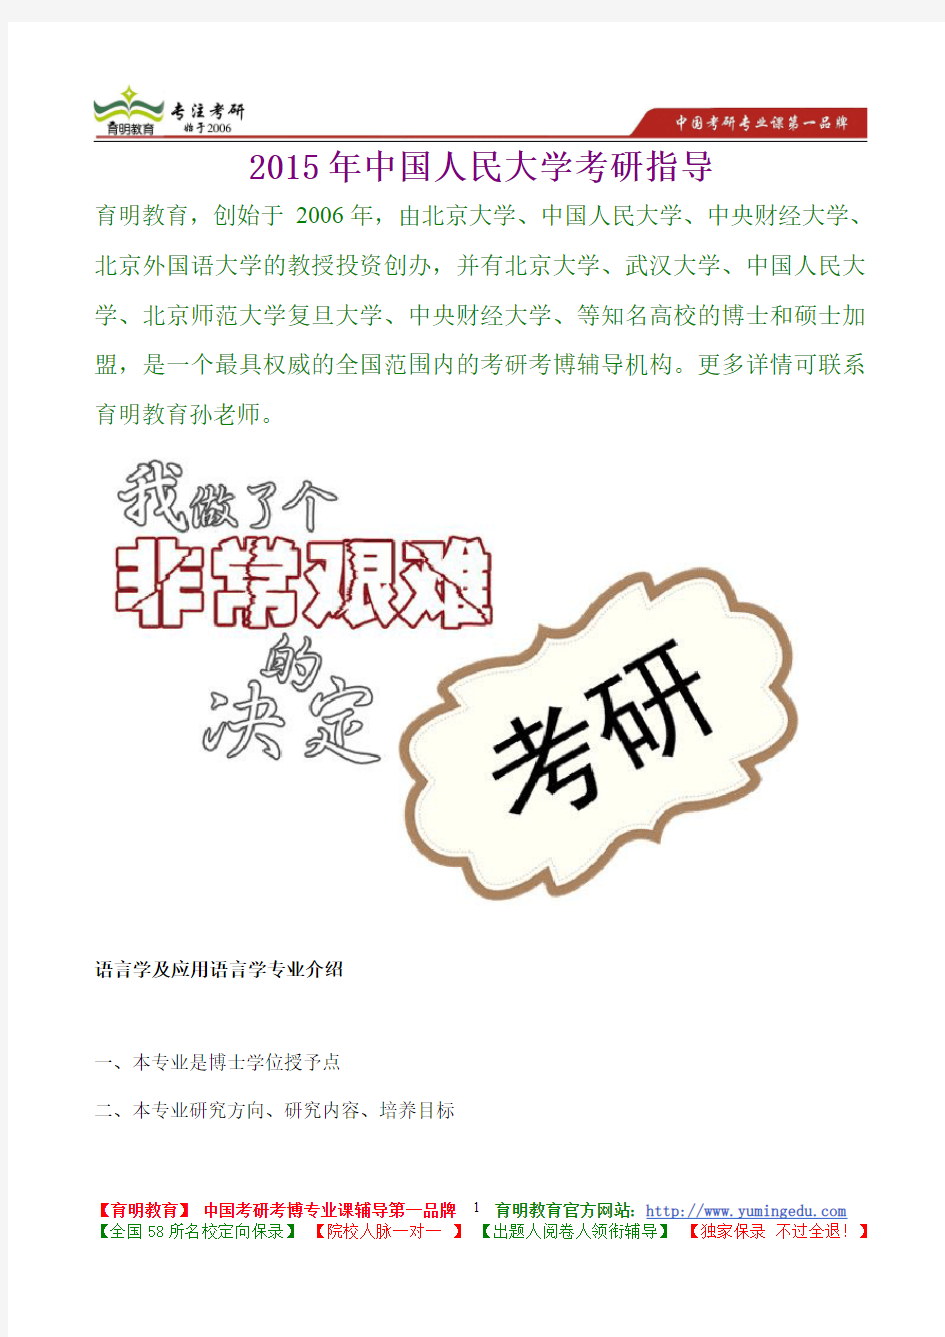 2015年中国人民大学语言学及应用语言学真题解析,考研真题,考研笔记,复试流程,考研经验